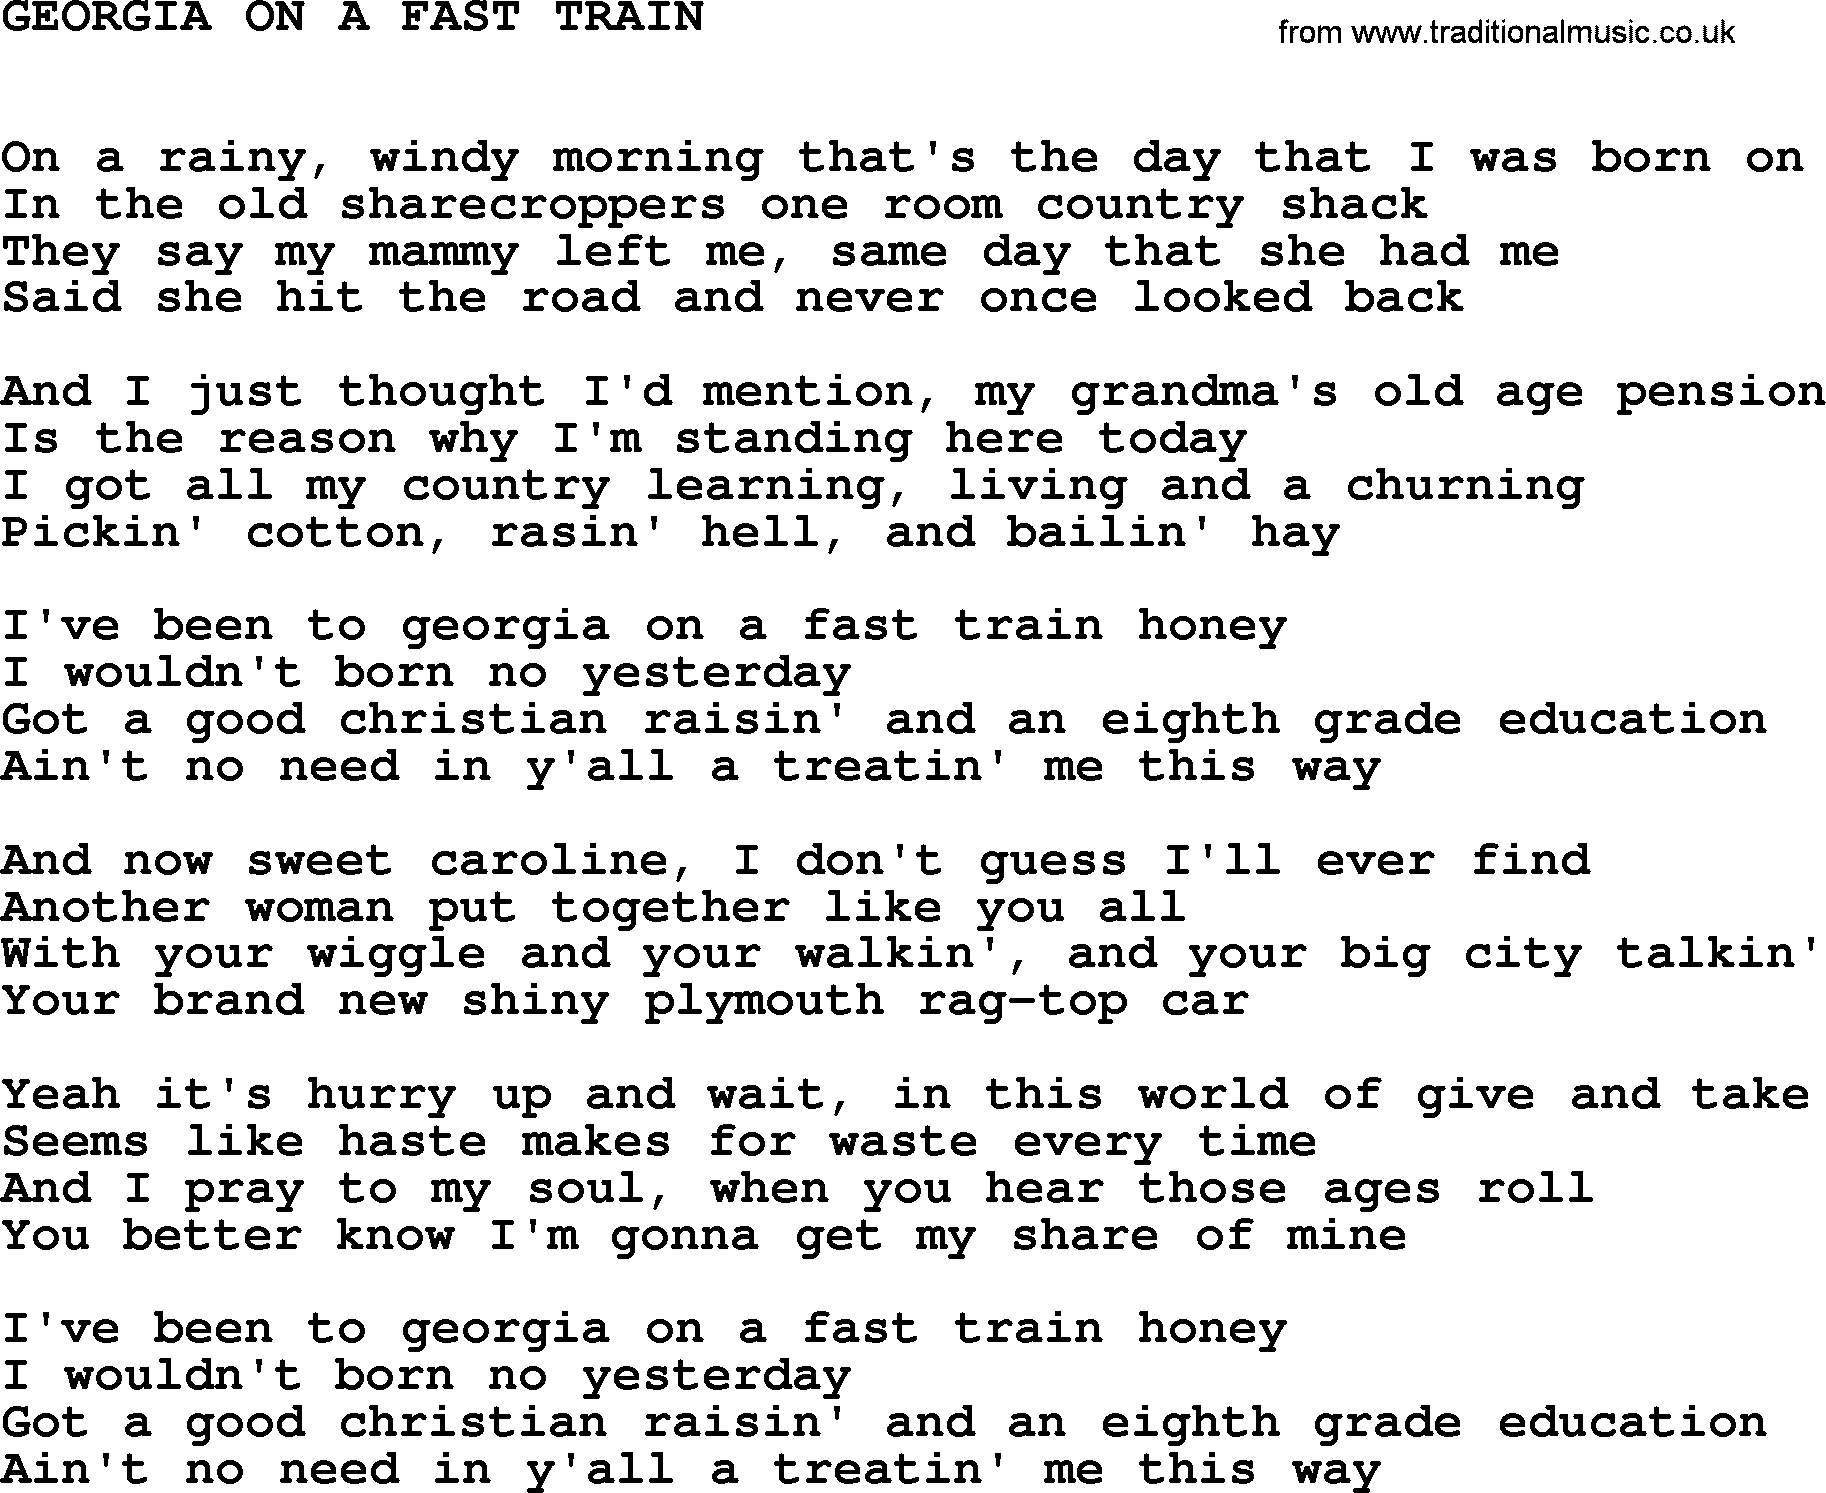 Johnny Cash song Georgia On A Fast Train.txt lyrics